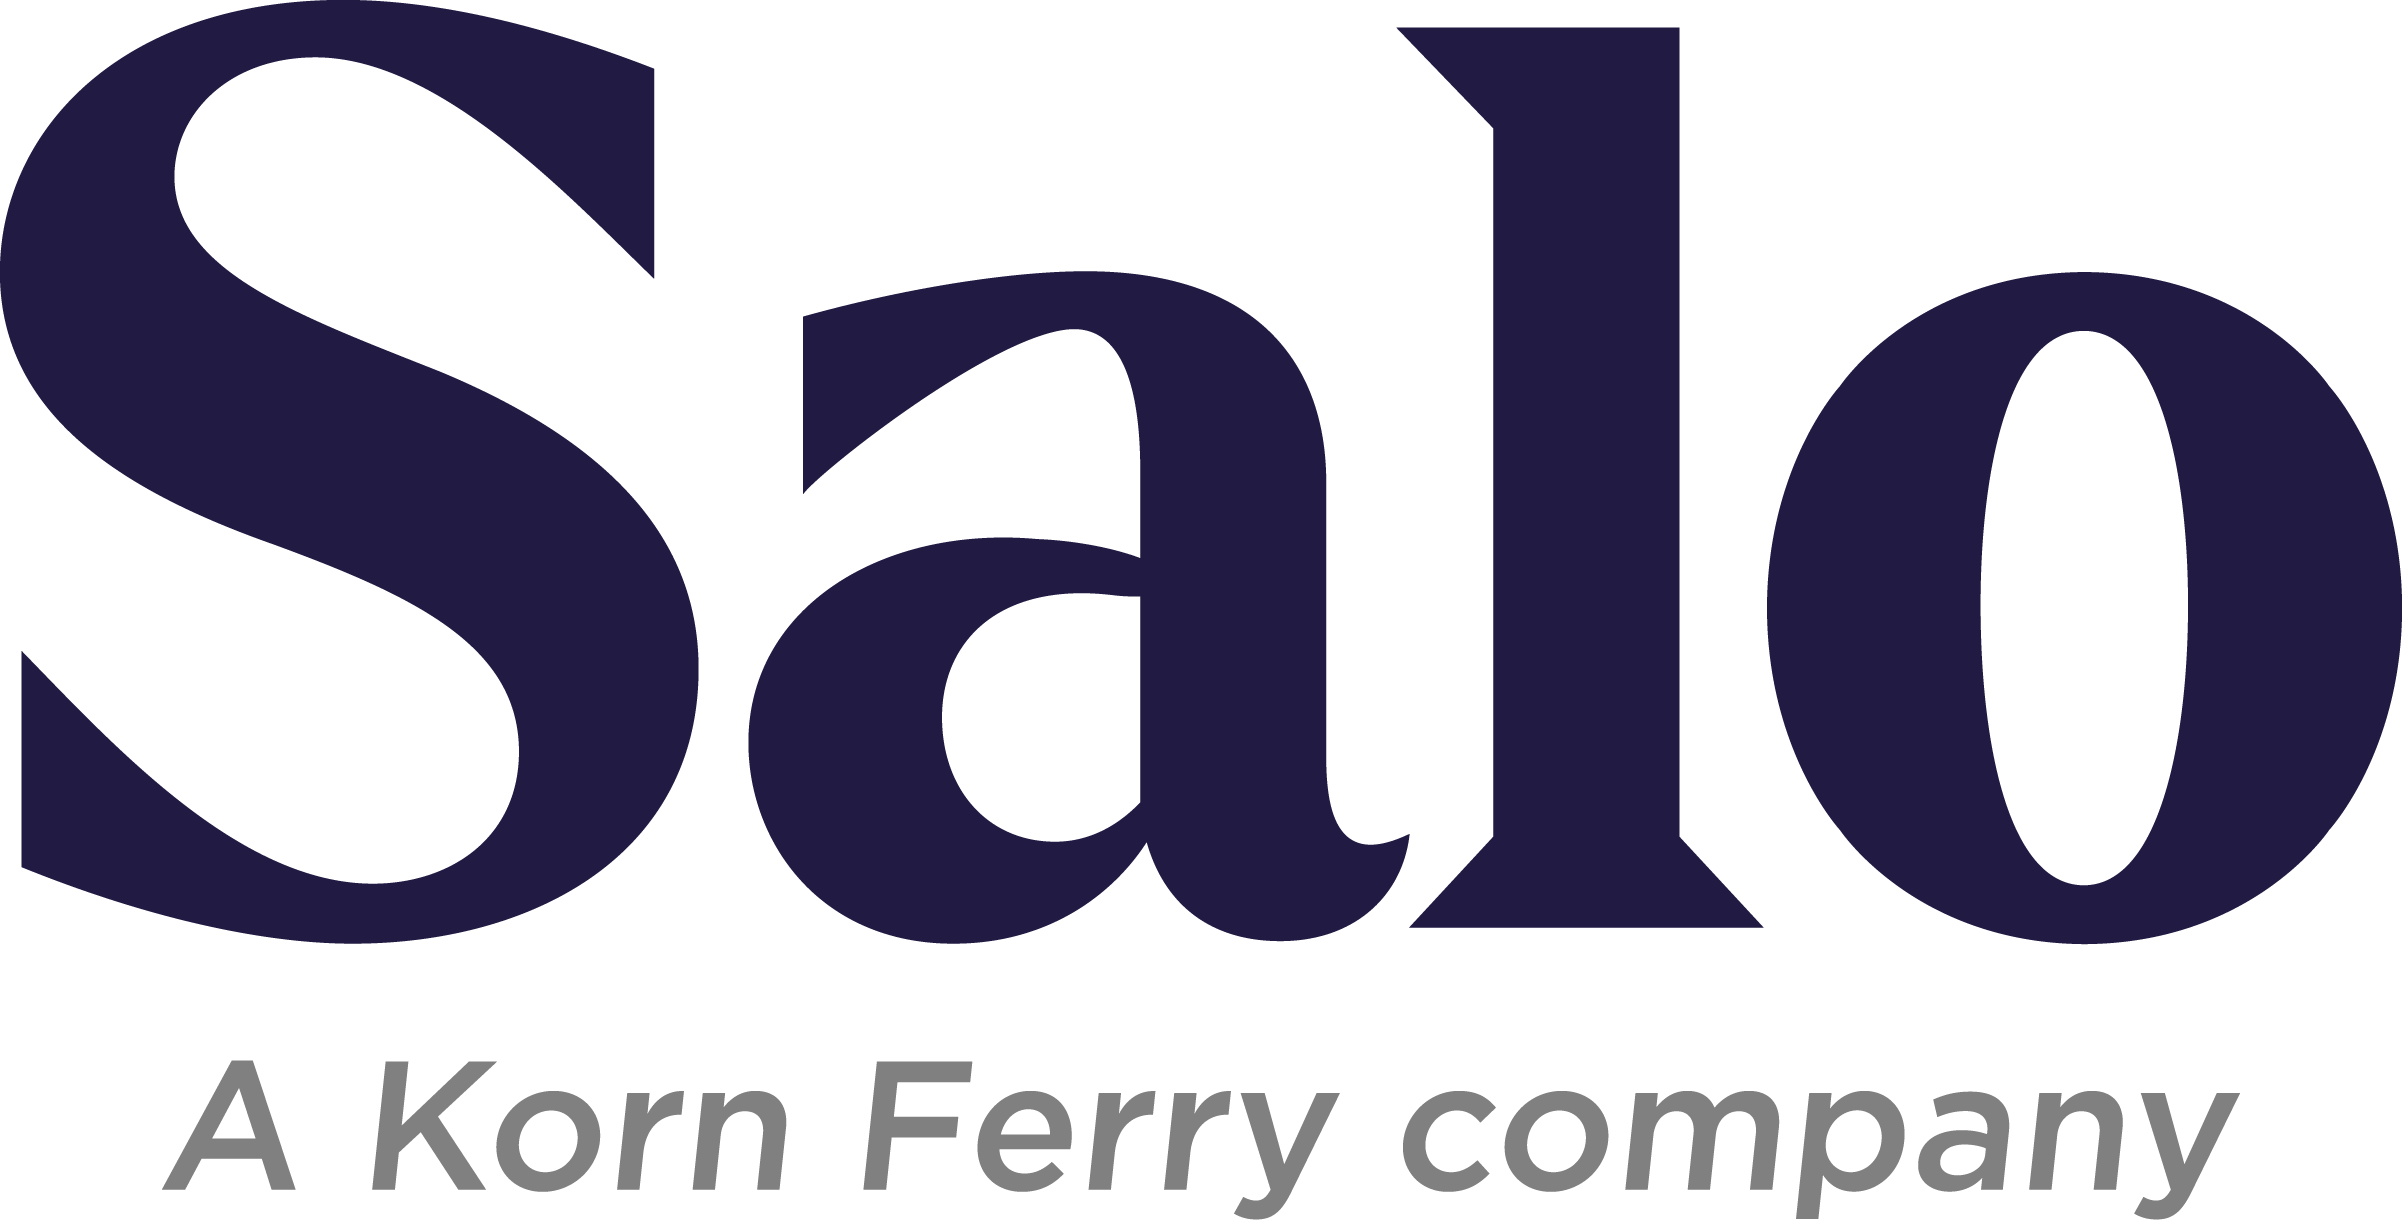 Salo, A Korn Ferry company photo 1